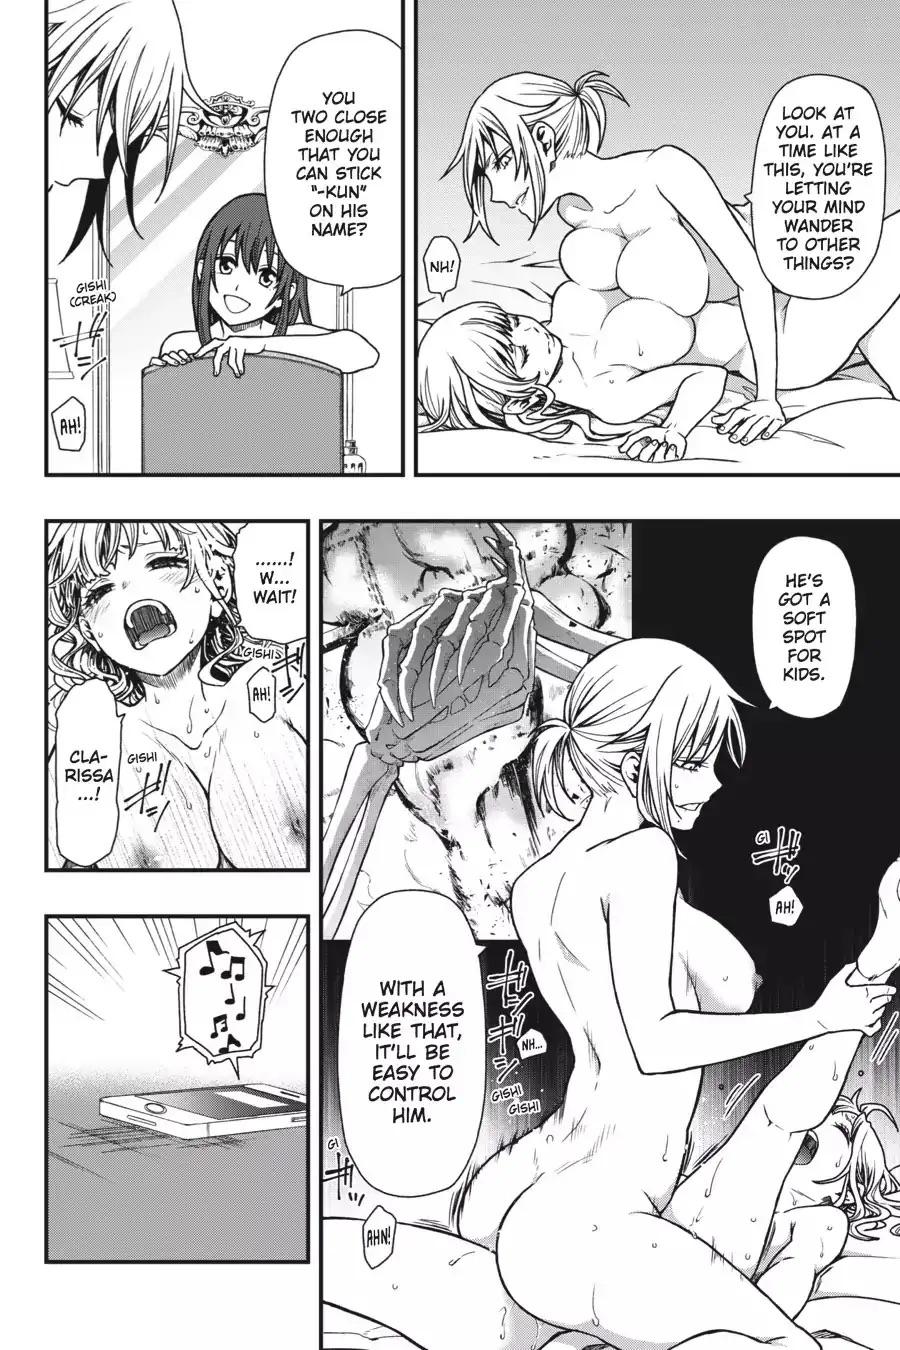 Sexual yuri manga